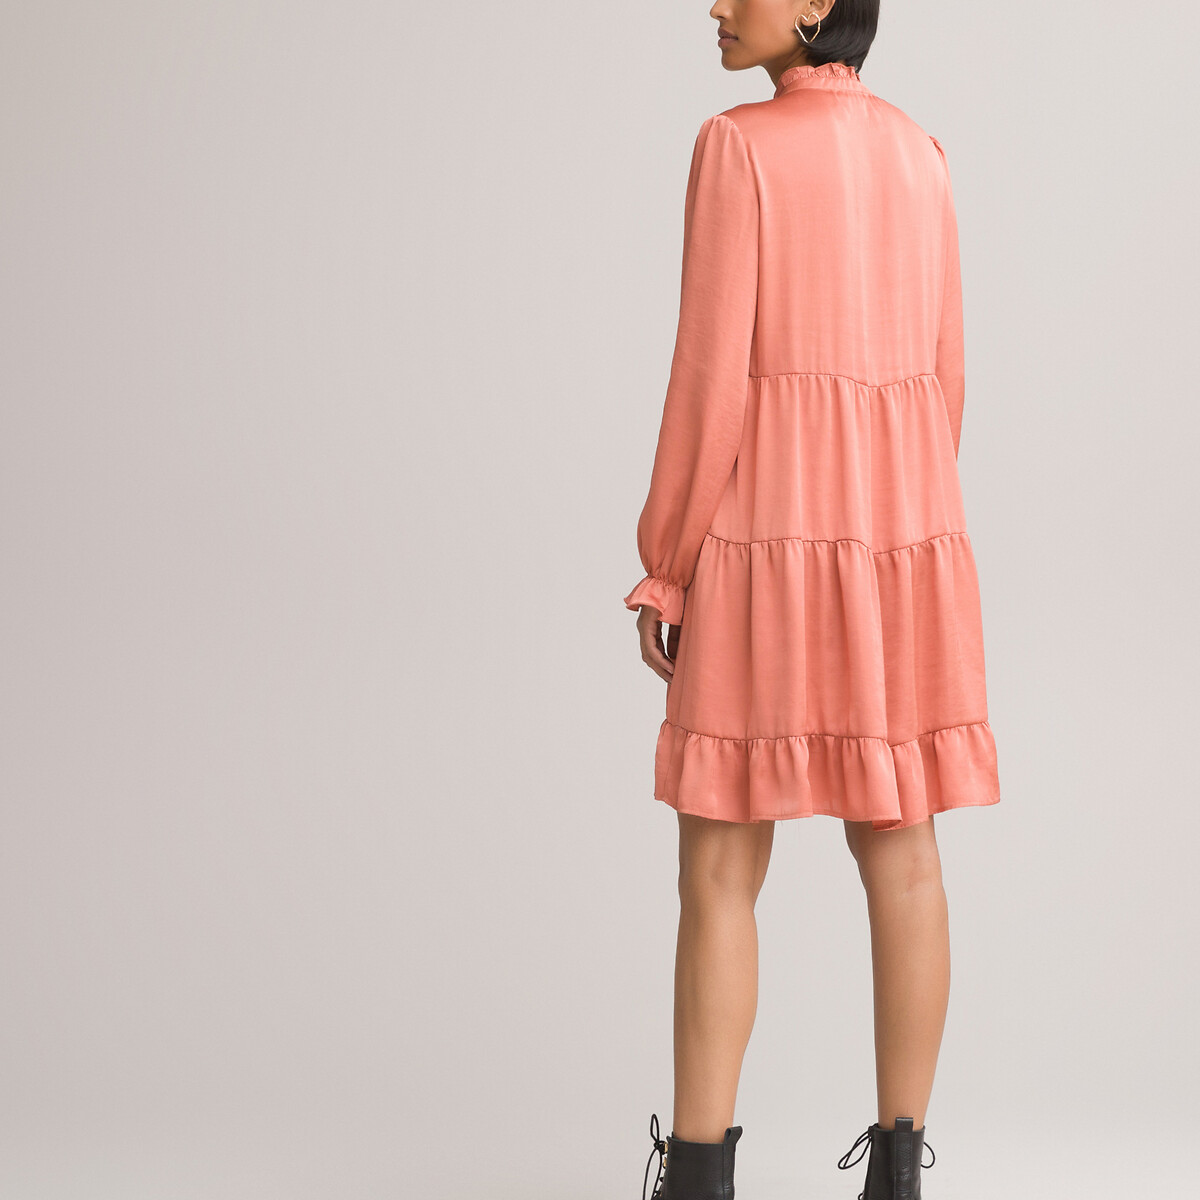 Платье LaRedoute В стиле baby doll с воланами из атласной ткани 46 розовый, размер 46 - фото 4